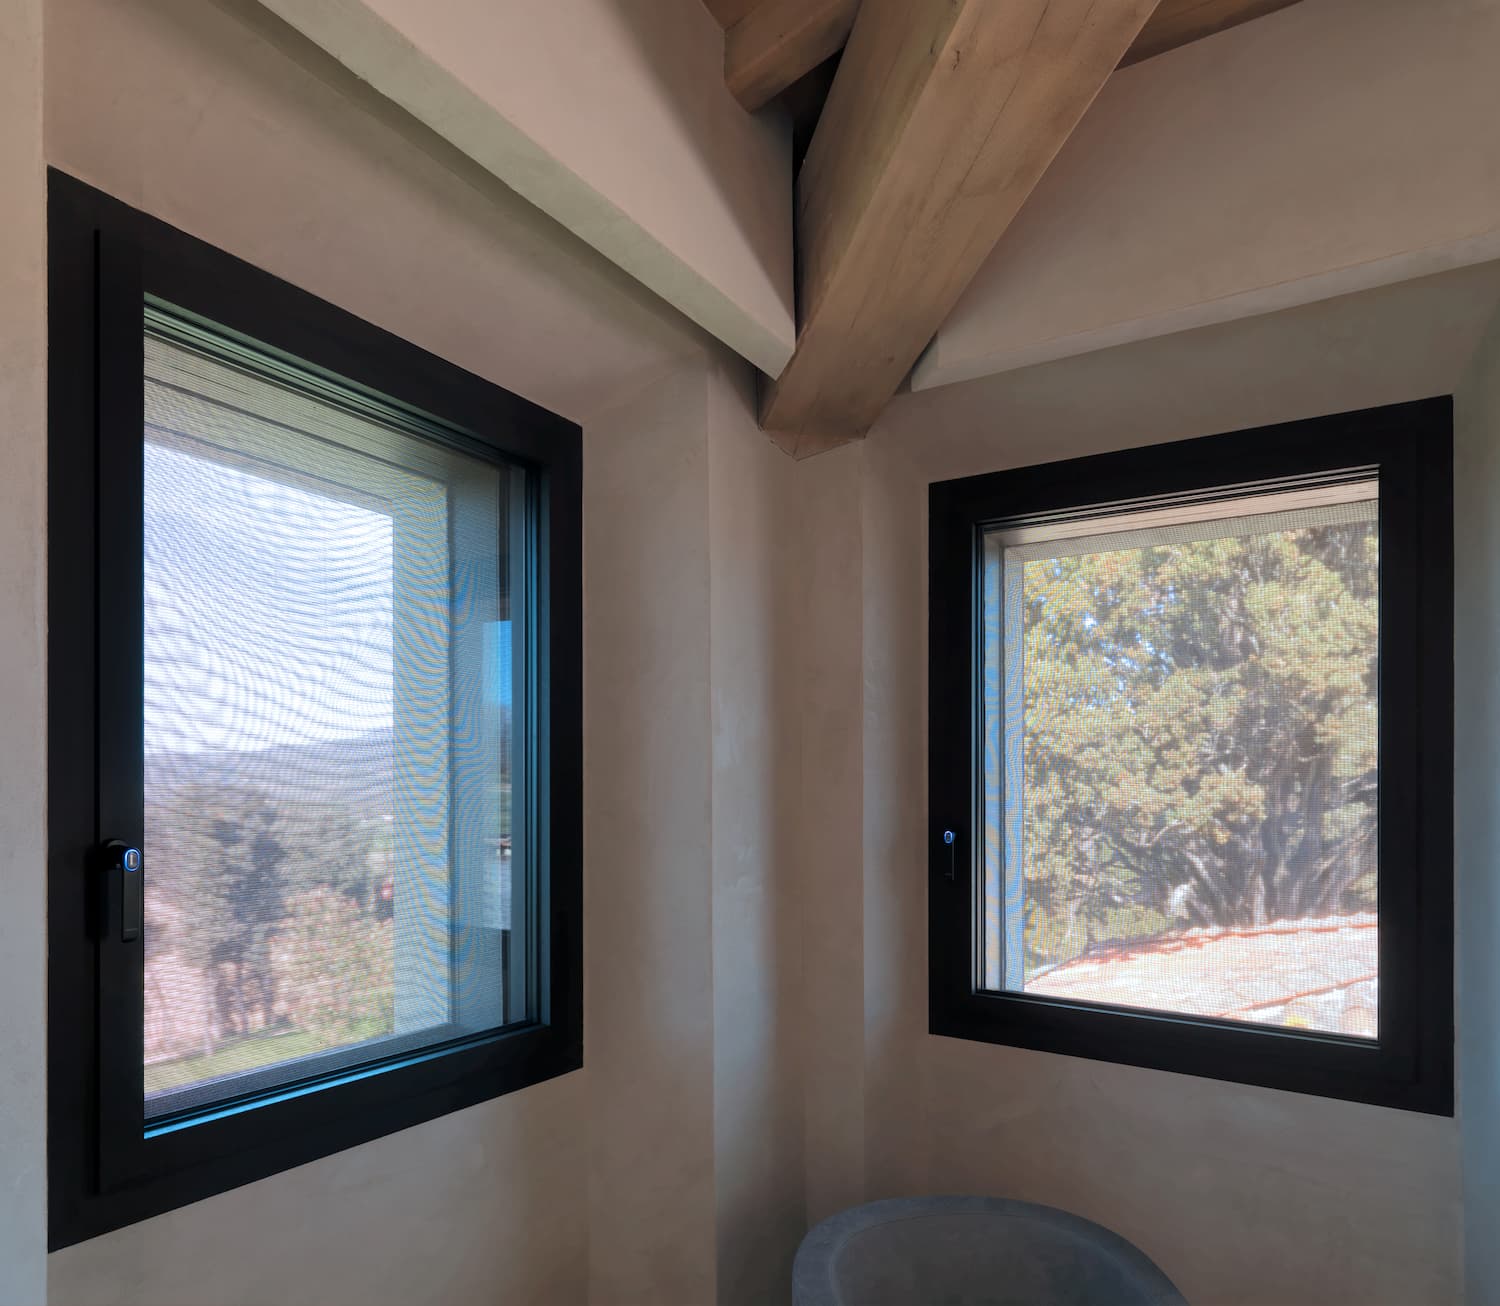 Ottimizzare gli spazi in una casa piccola grazie alle finestre